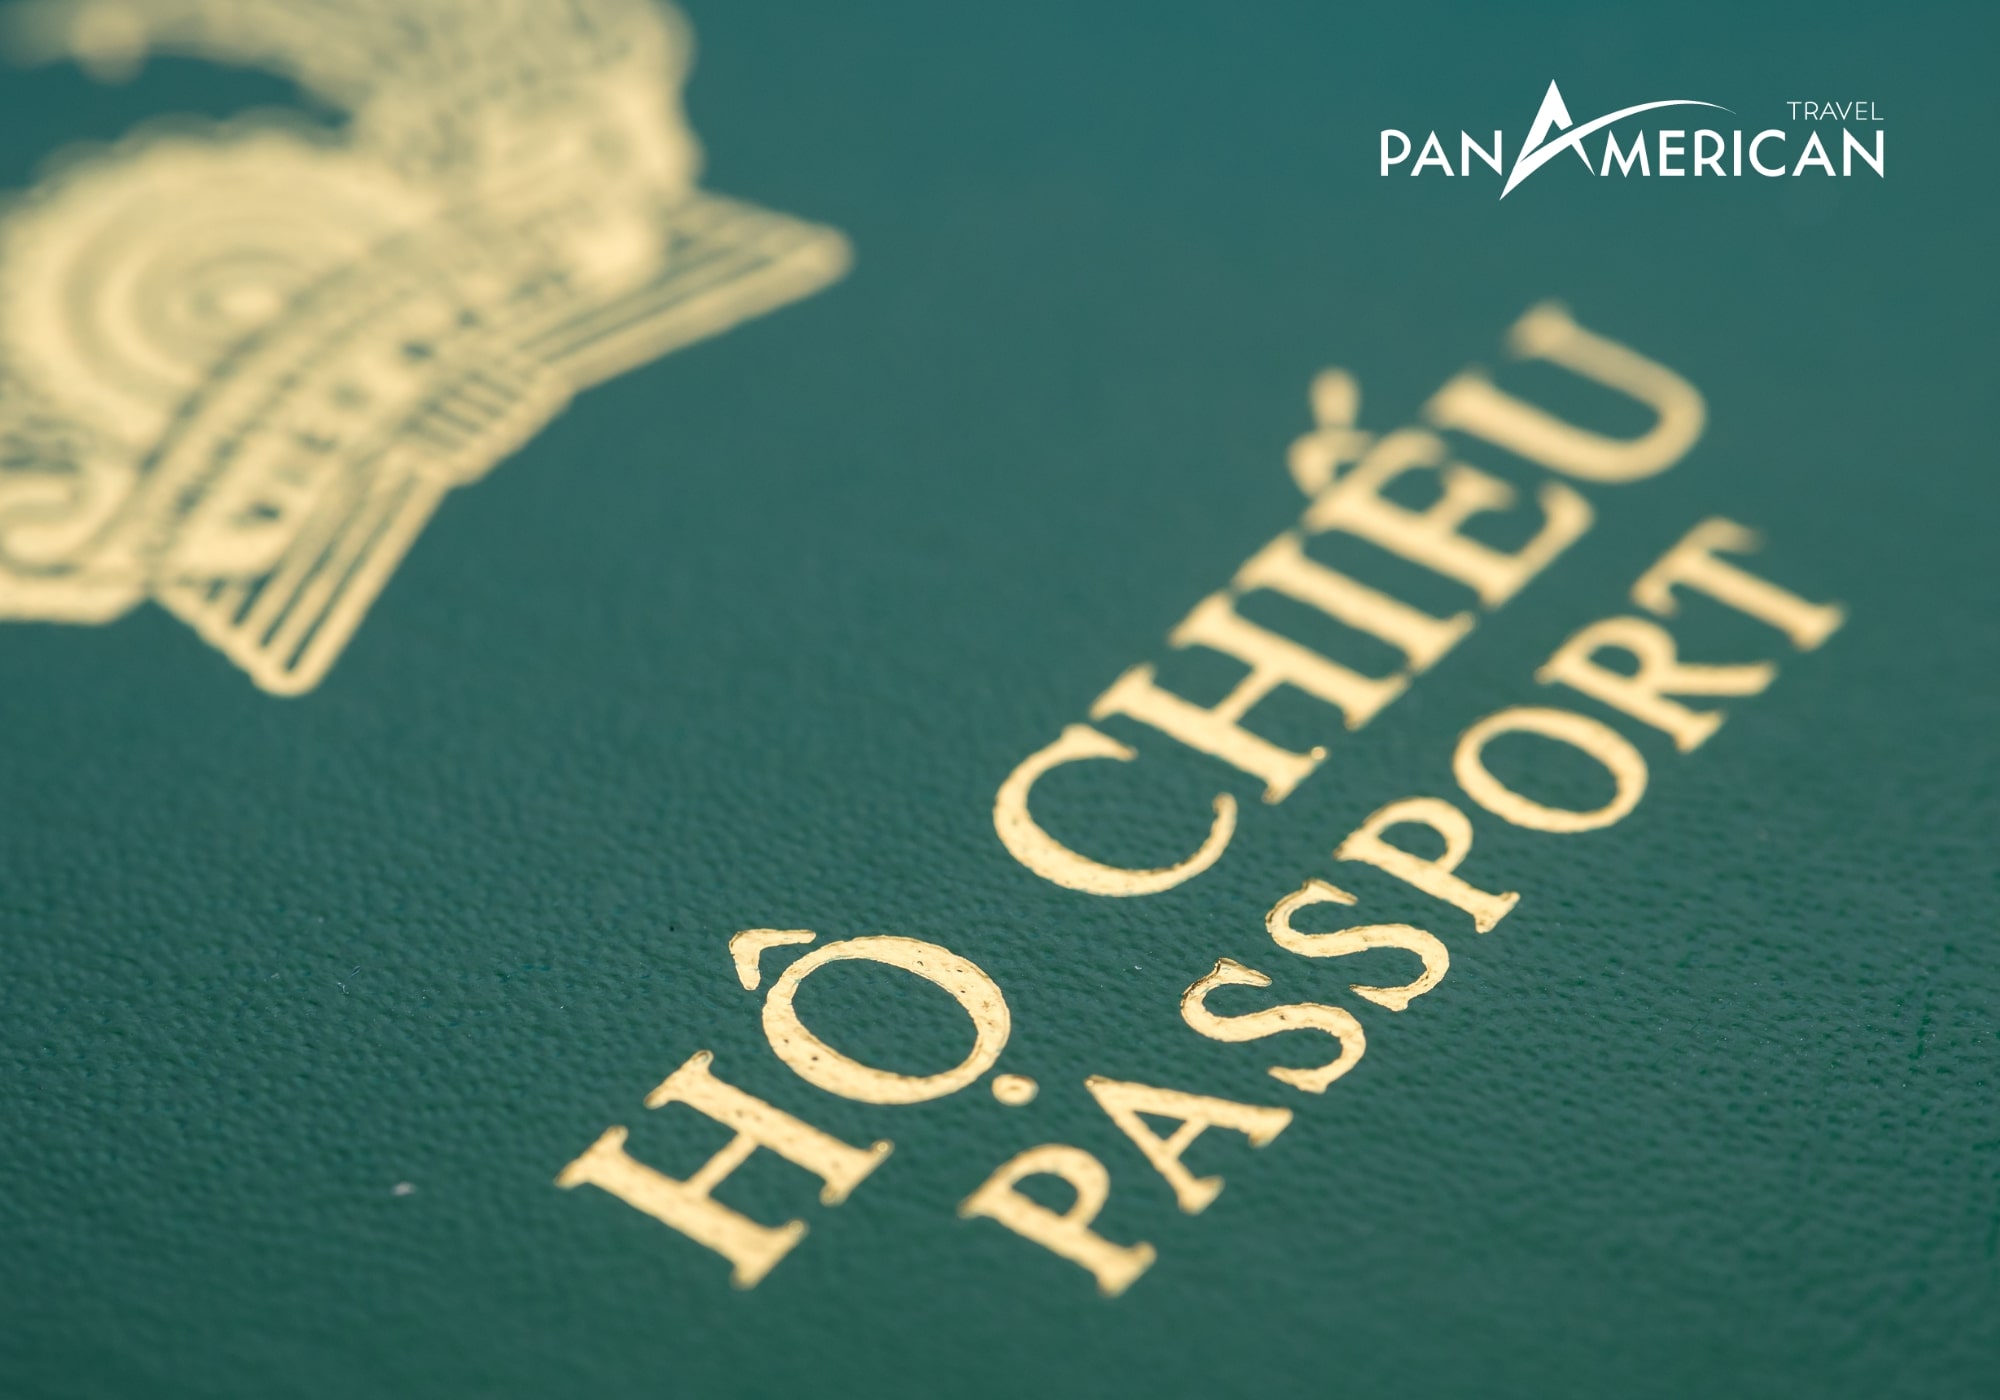 Hộ chiếu là một trong những loại giấy tờ bắt buộc cần có